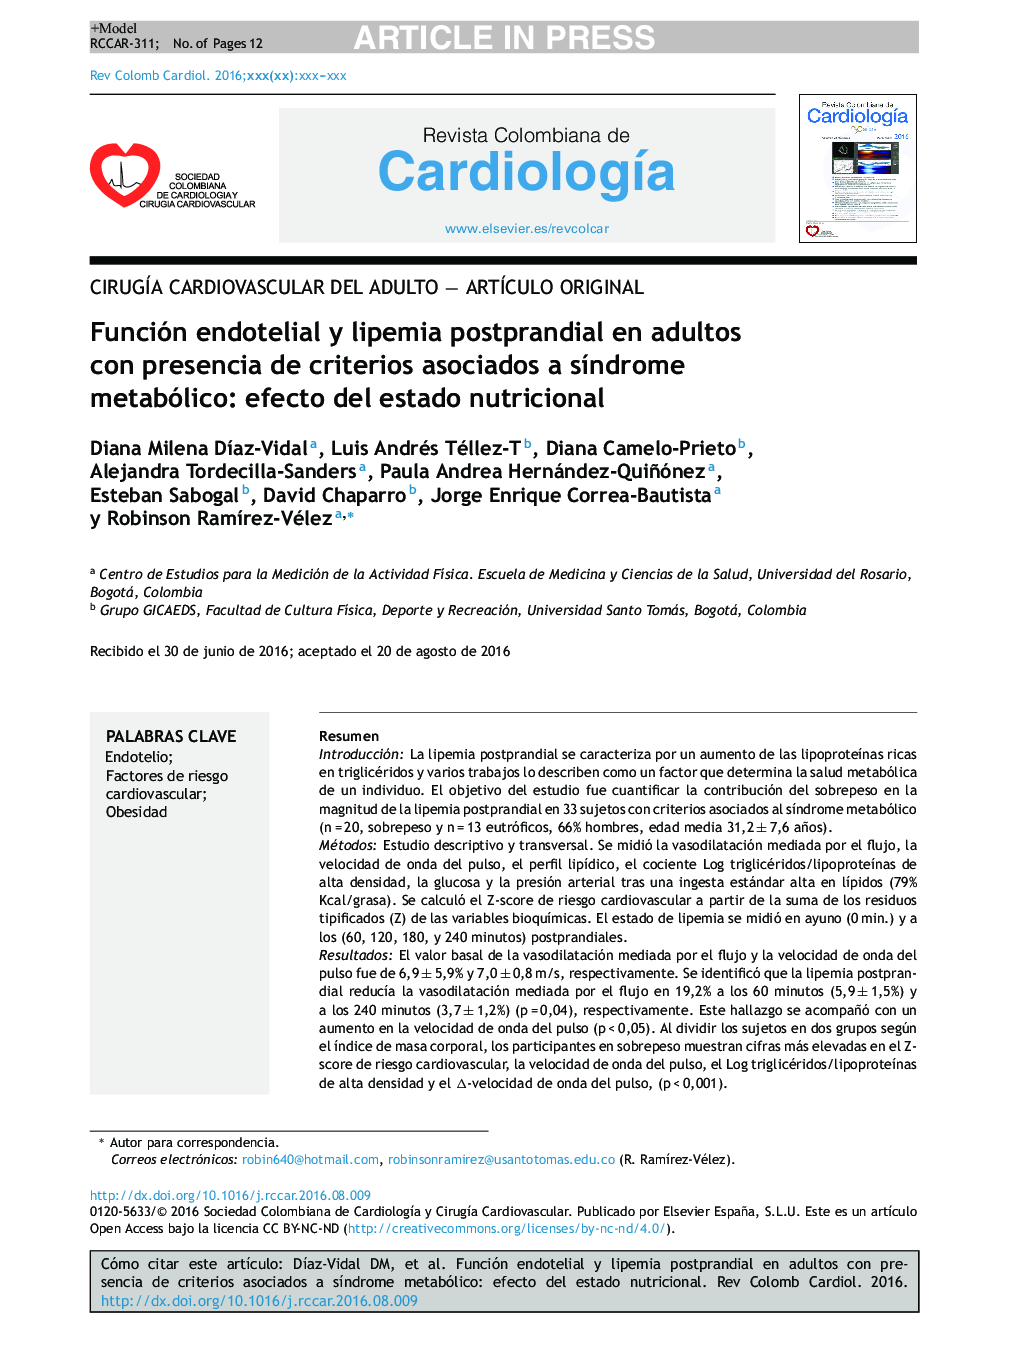 Función endotelial y lipemia postprandial en adultos con presencia de criterios asociados a sÃ­ndrome metabólico: efecto del estado nutricional